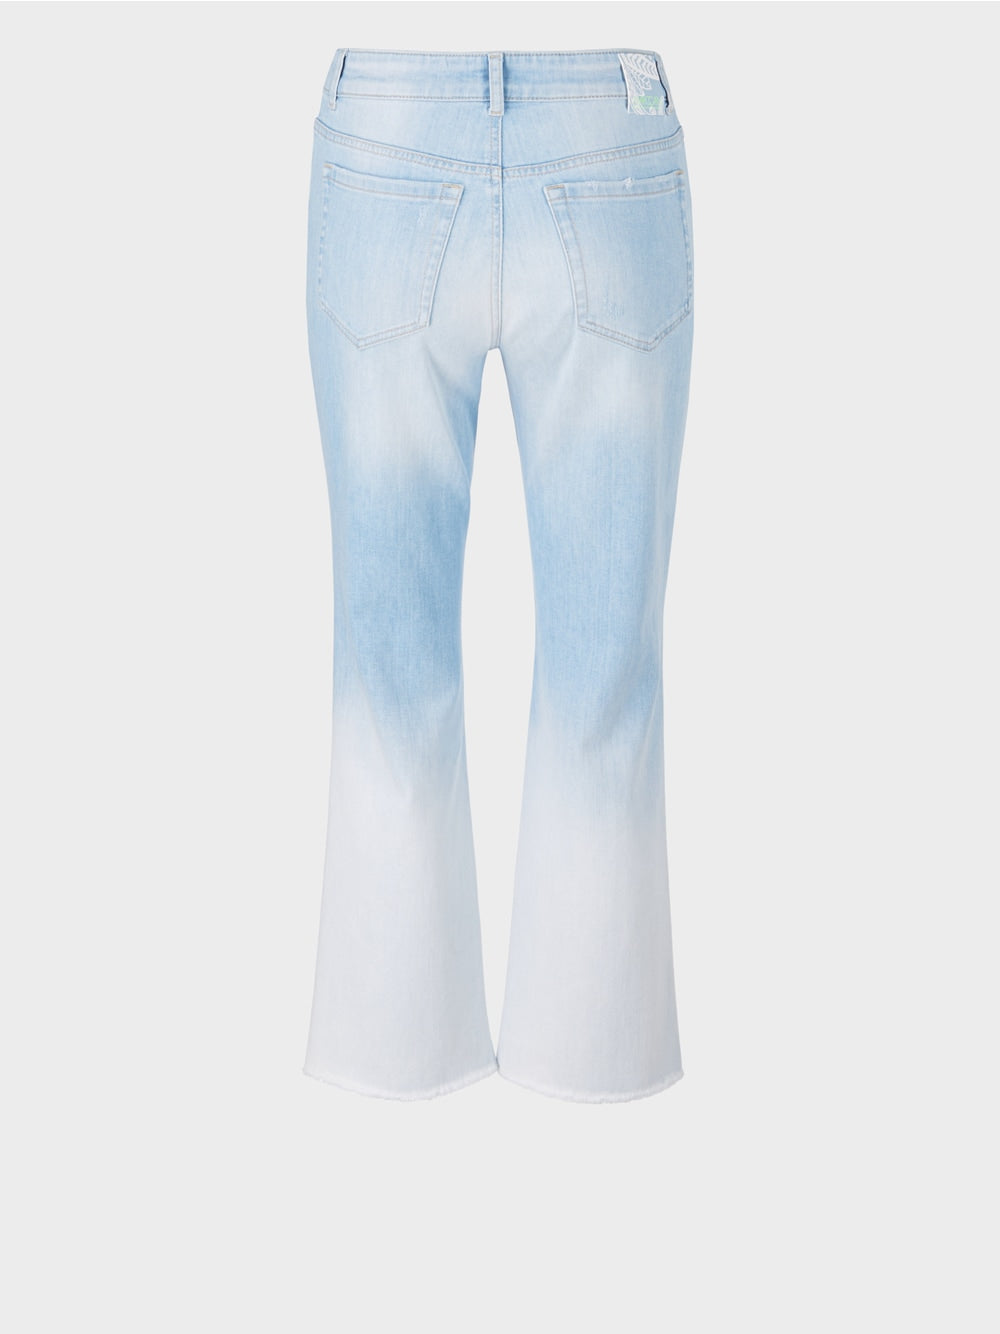 Marc Cain Denim "Rethink Together” jeans - FORLI model